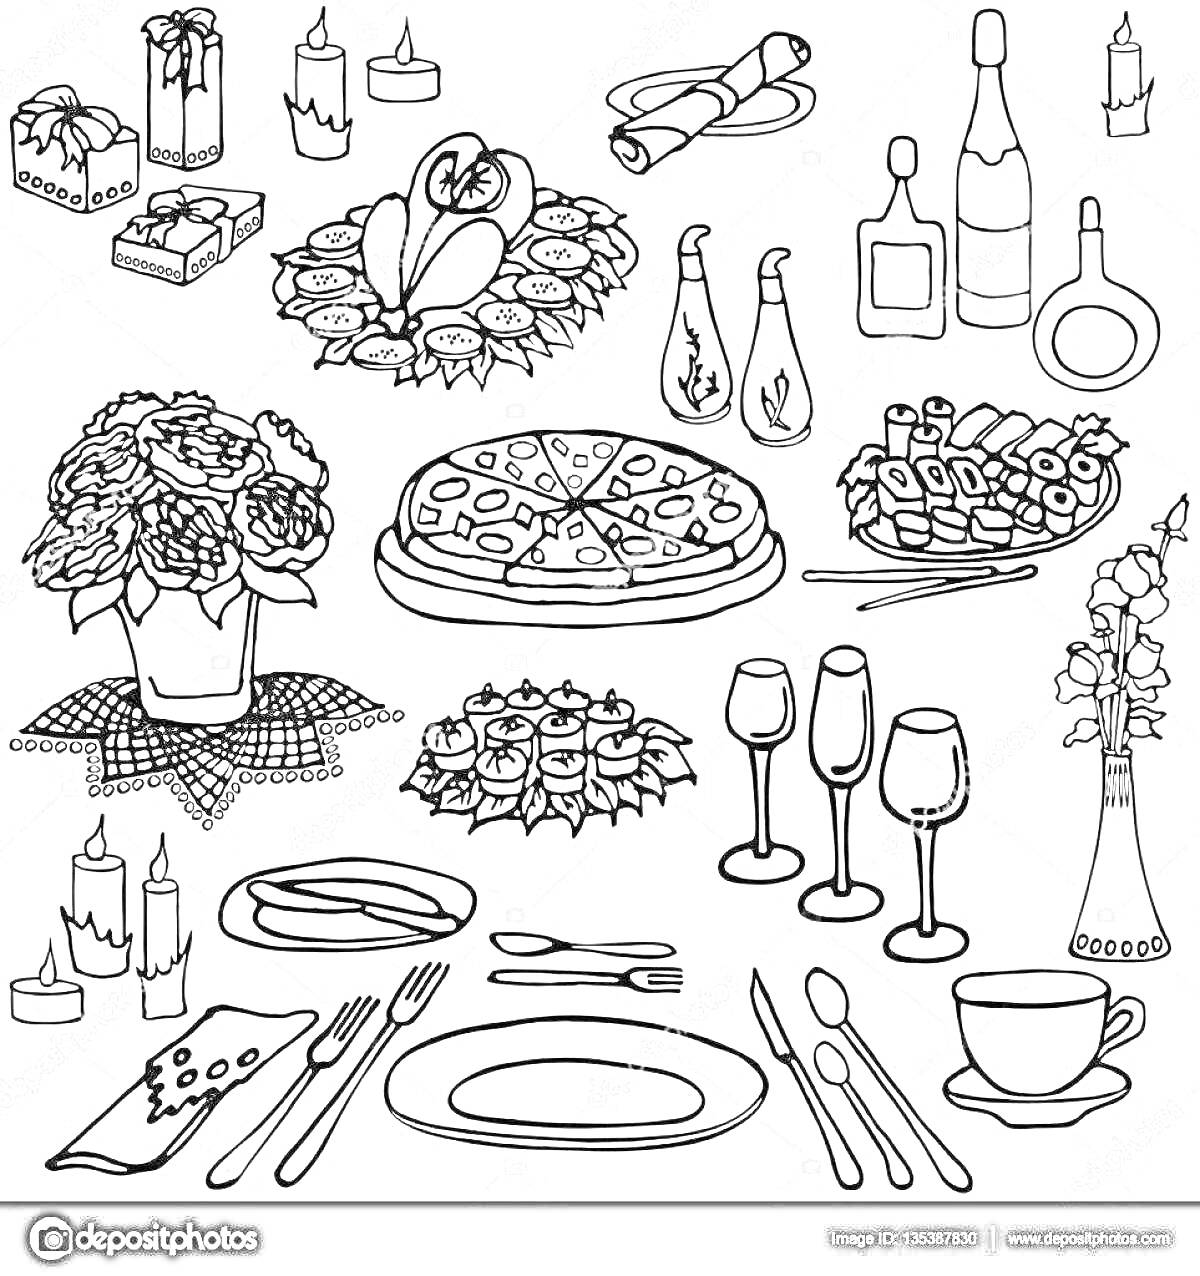 Раскраска праздничный стол с цветами, свечами, салфетками, сосудами с напитками, роллами, рыбой, пиццей, фруктами, конфетами и столовыми приборами